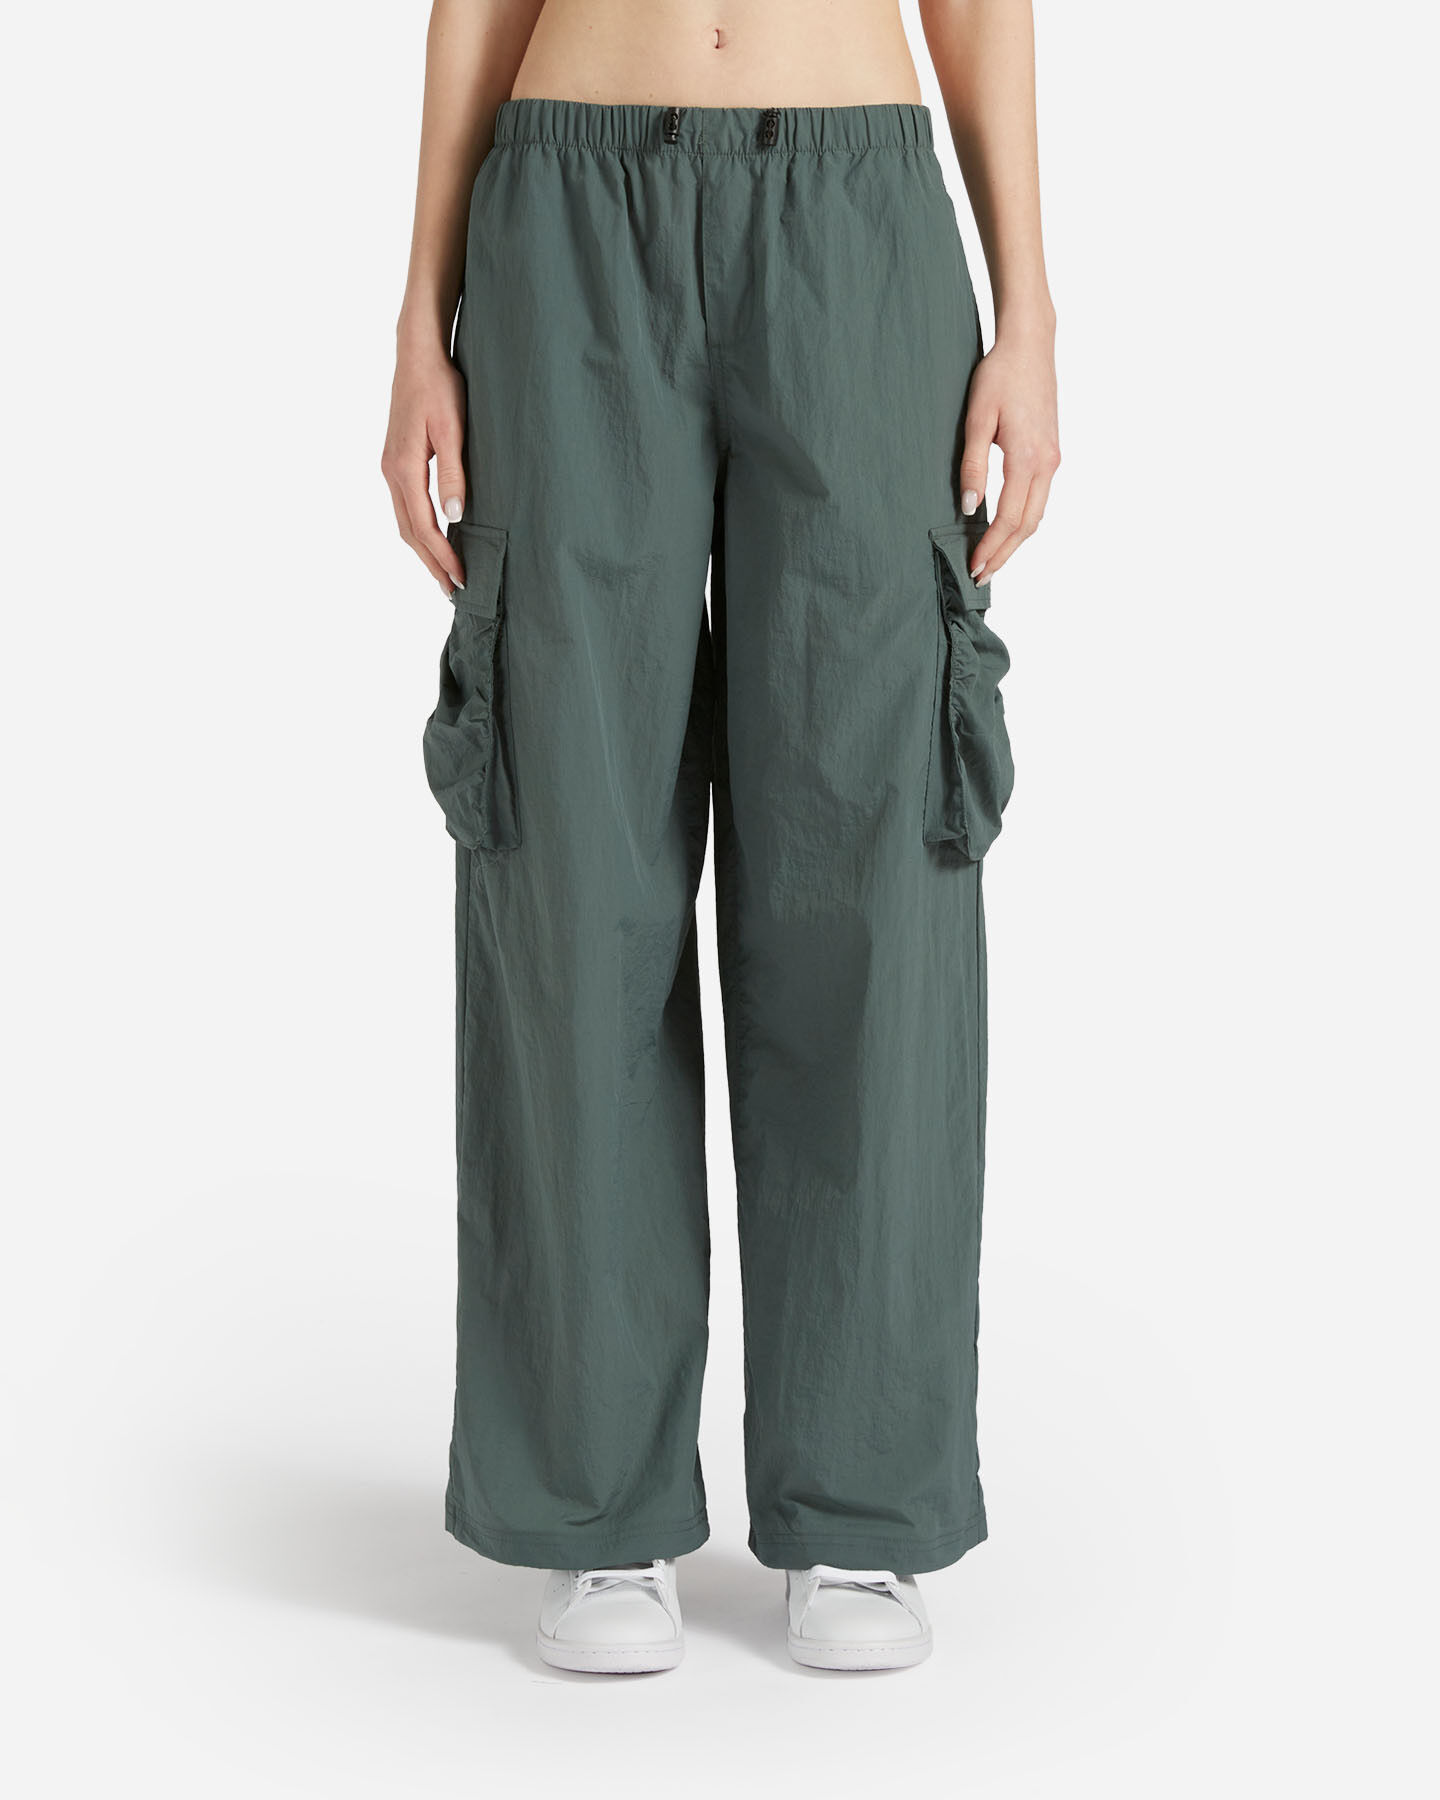  Pantalone FILA RIDER W S4130255|783|XS scatto 0